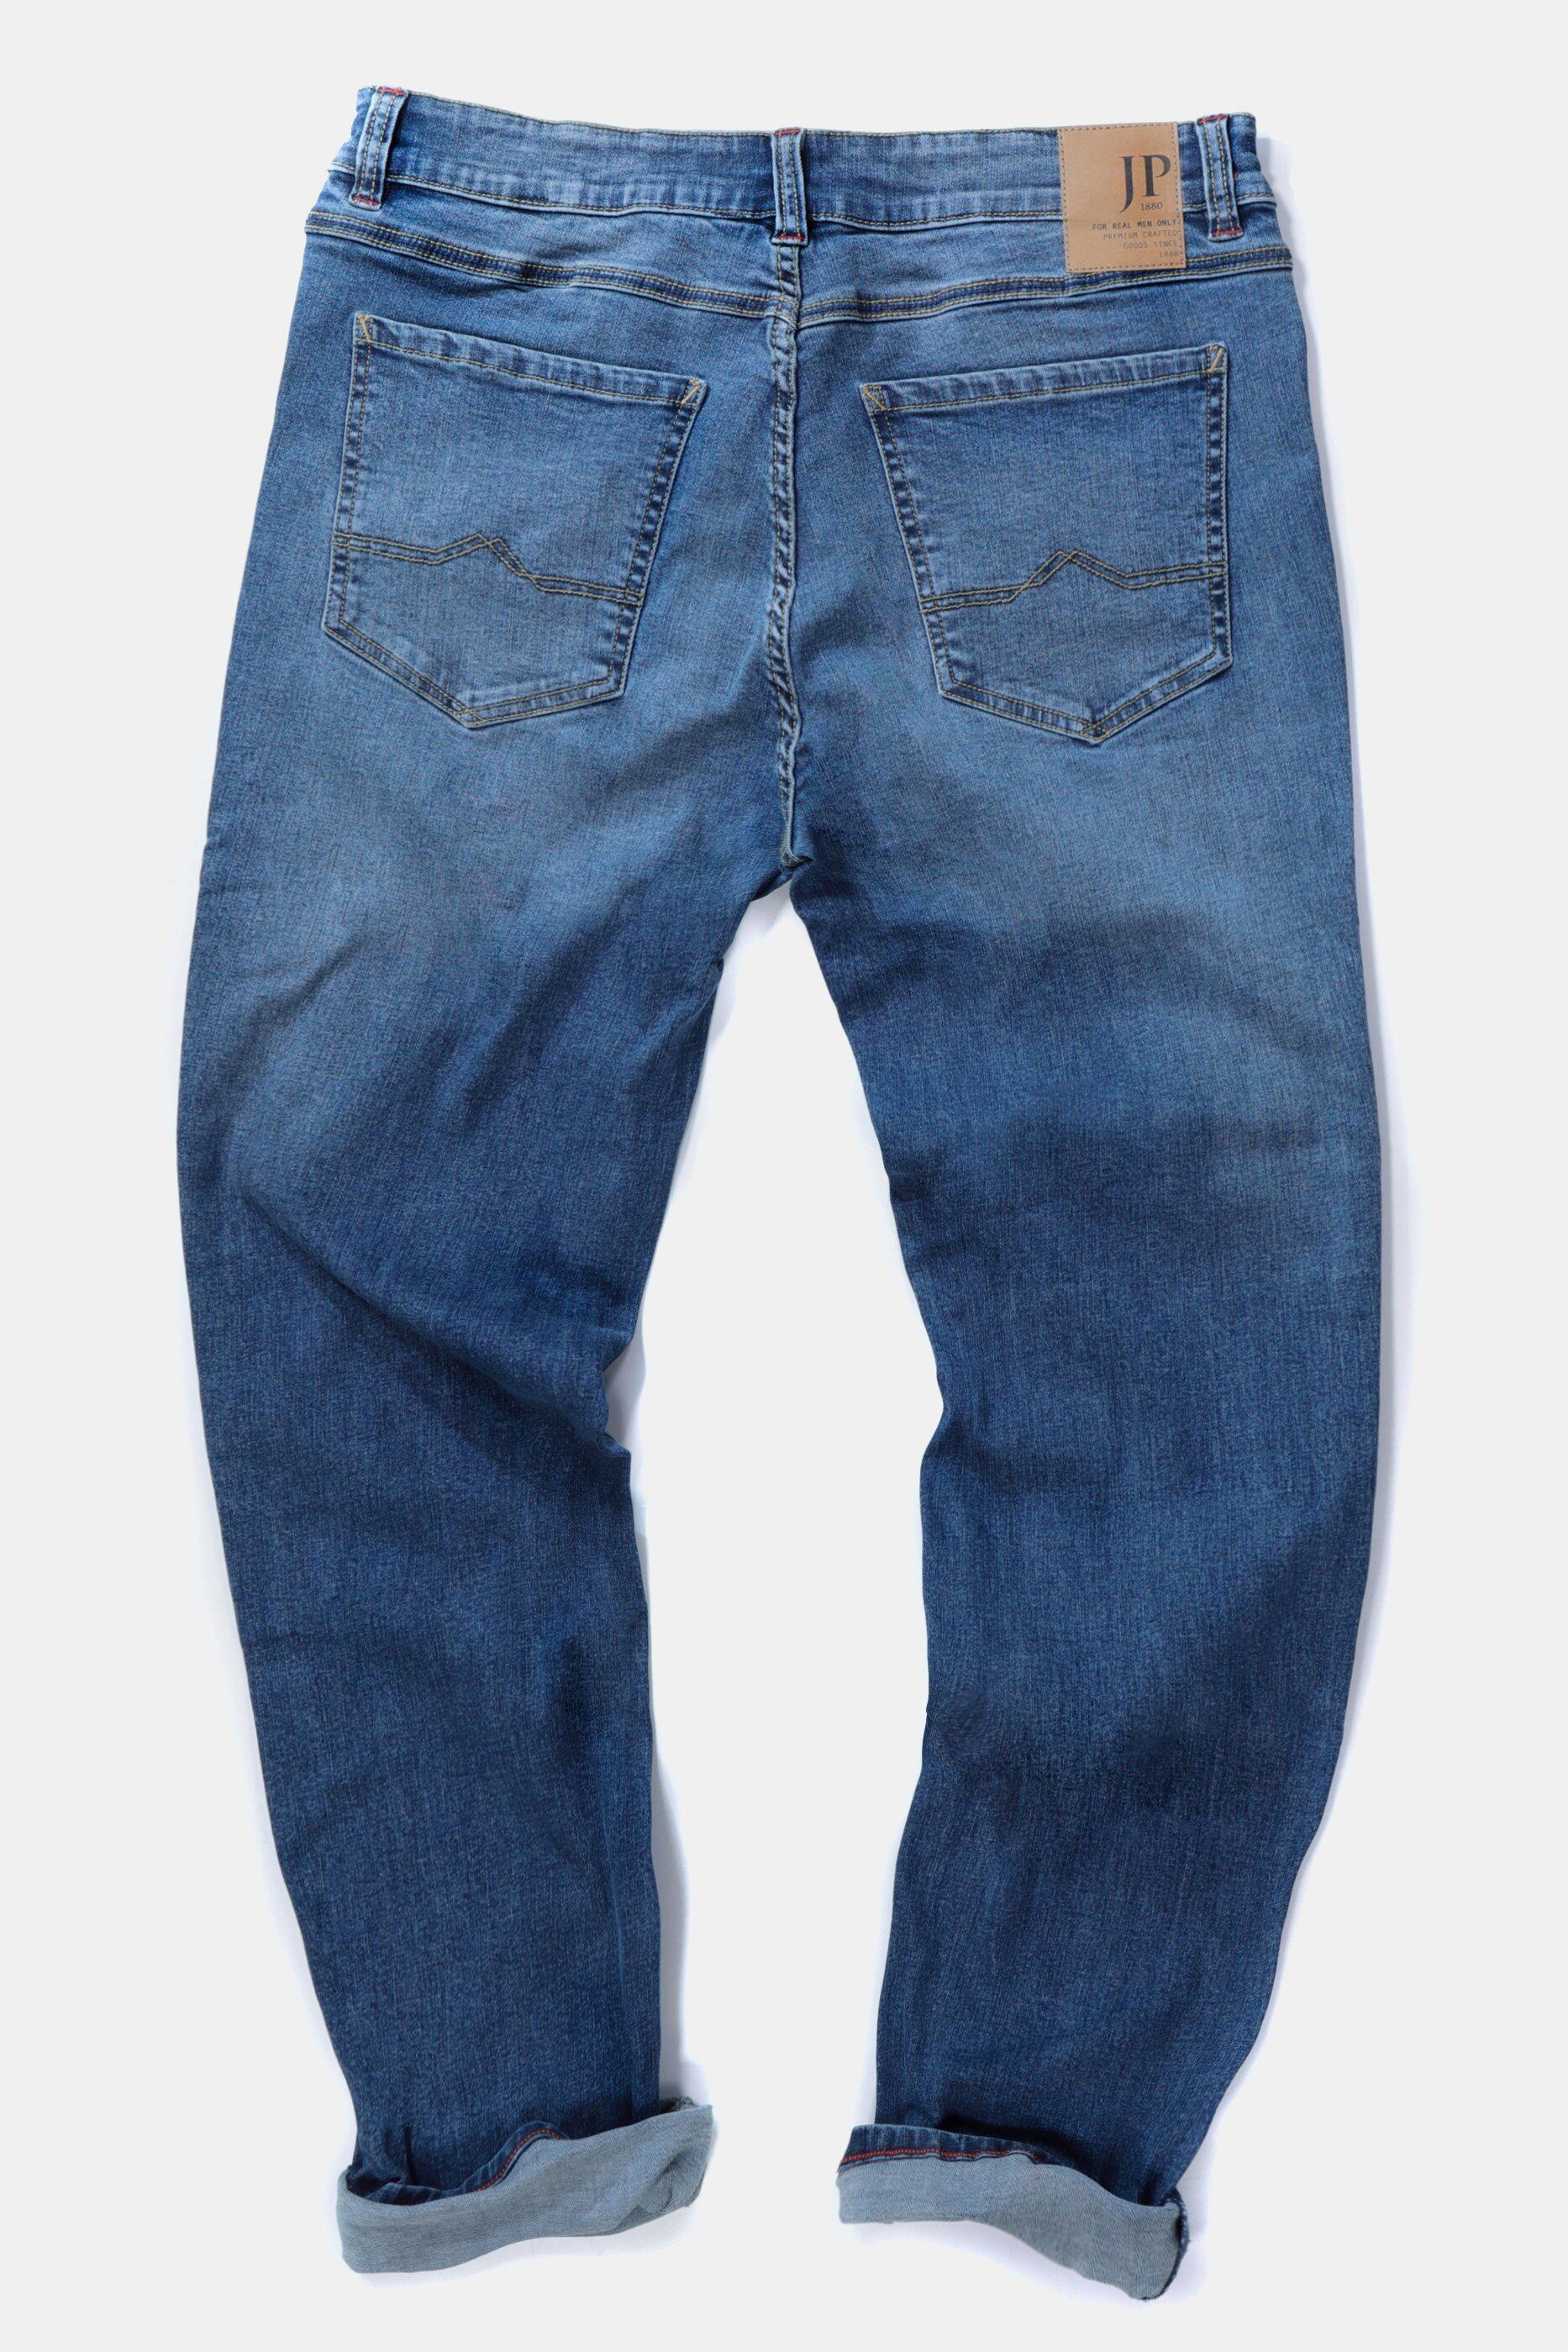 Jeans 5-Pocket-Jeans Fit JP1880 bis 70/35 FLEXNAMIC® blue Gr. Straight denim Denim